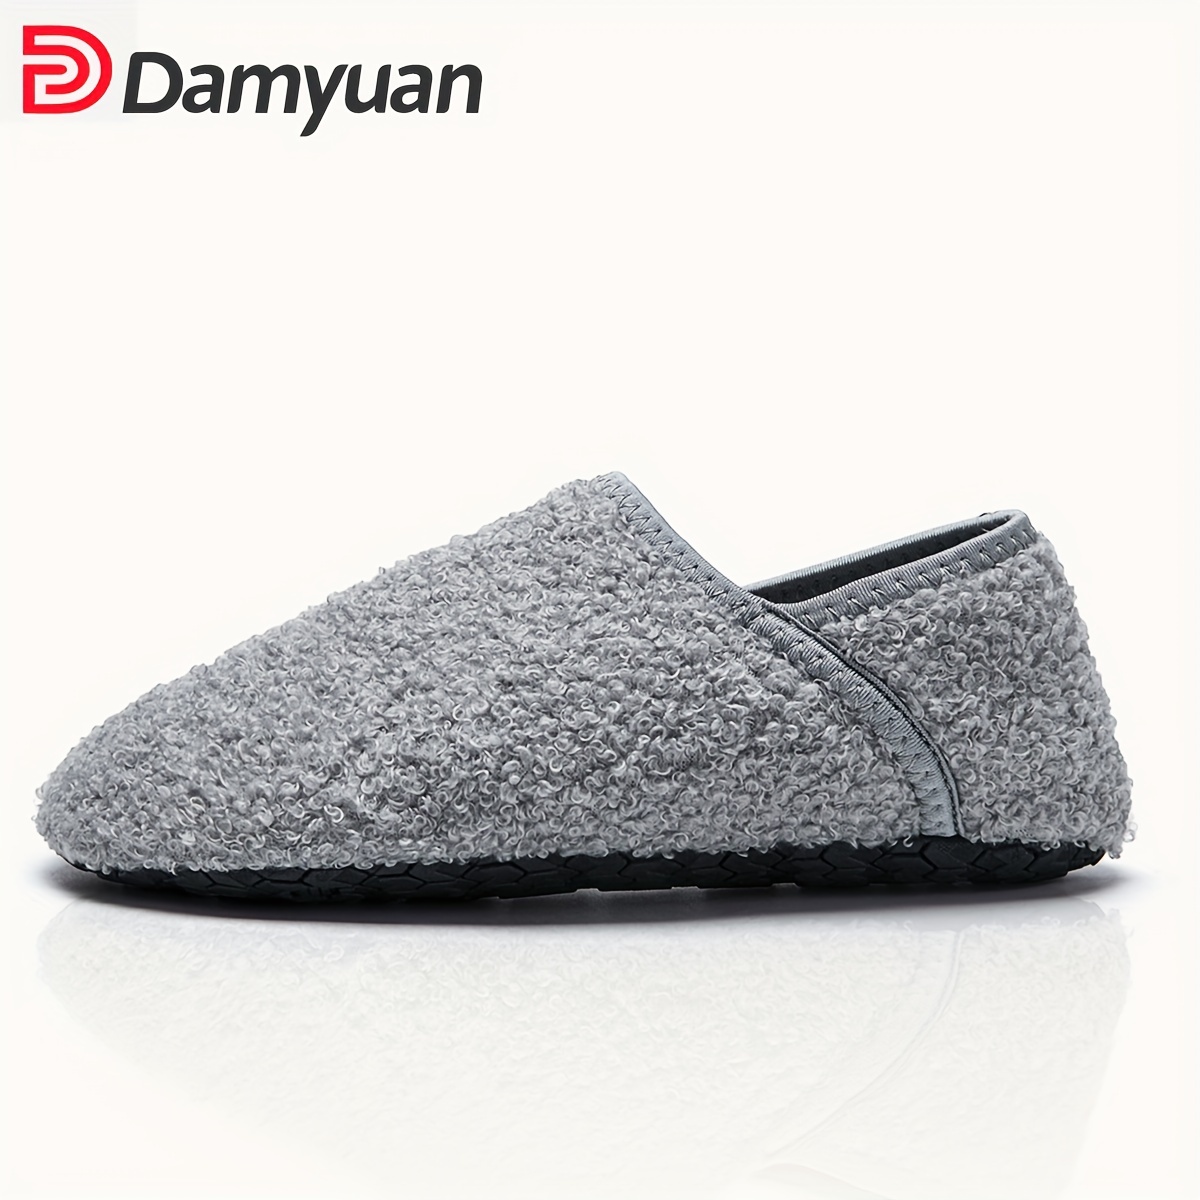 Damyuan Mens House Slippers Winter Indoor/Outdoor